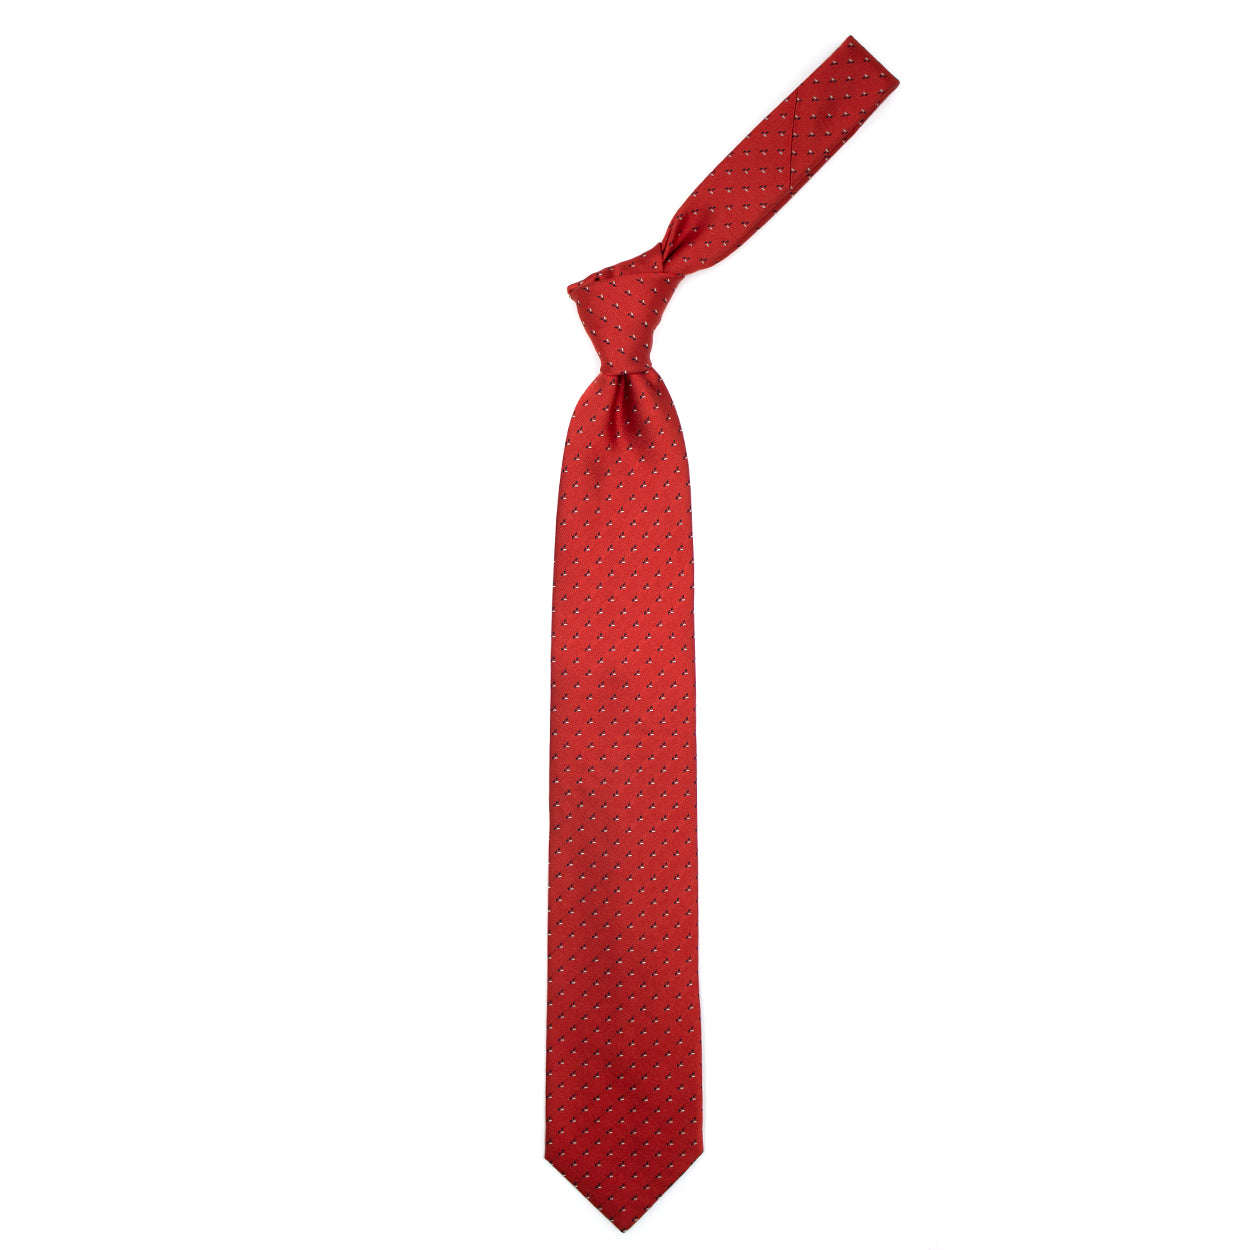 Cravatta rossa con piccole geometrie blue e grigie